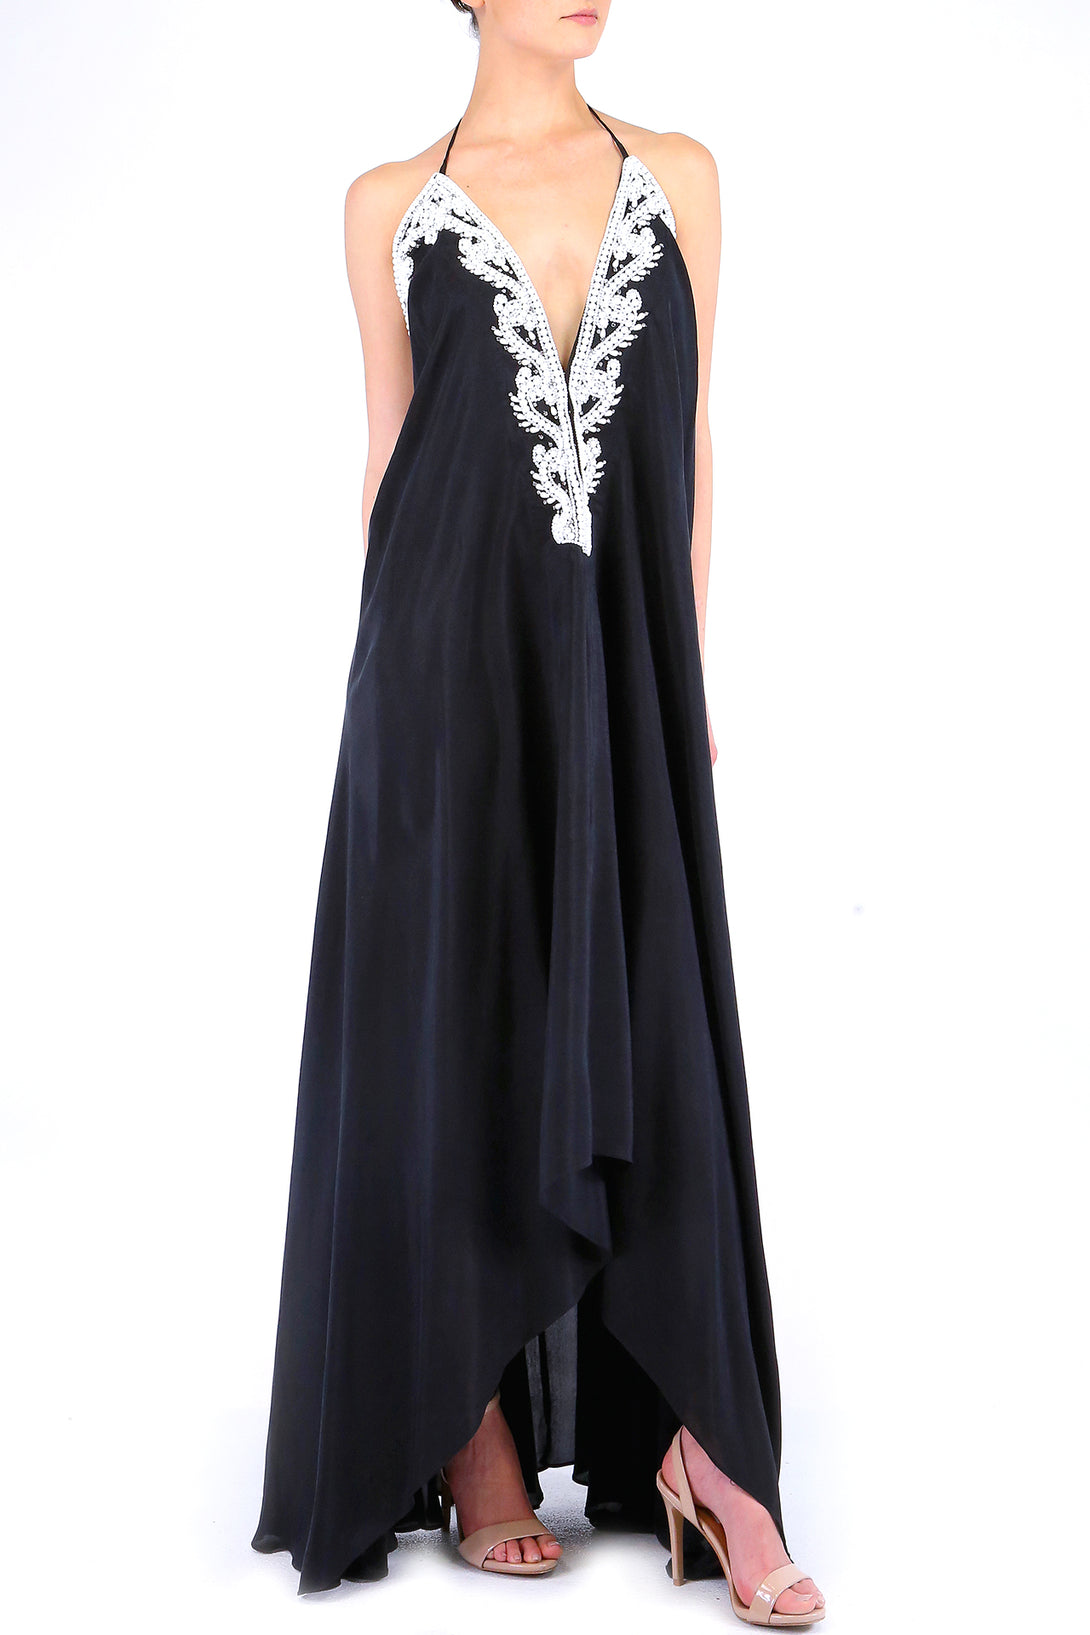  black dress long dress, Shahida Parides, beach maxi dress, long summer dresses, backless maxi dress,